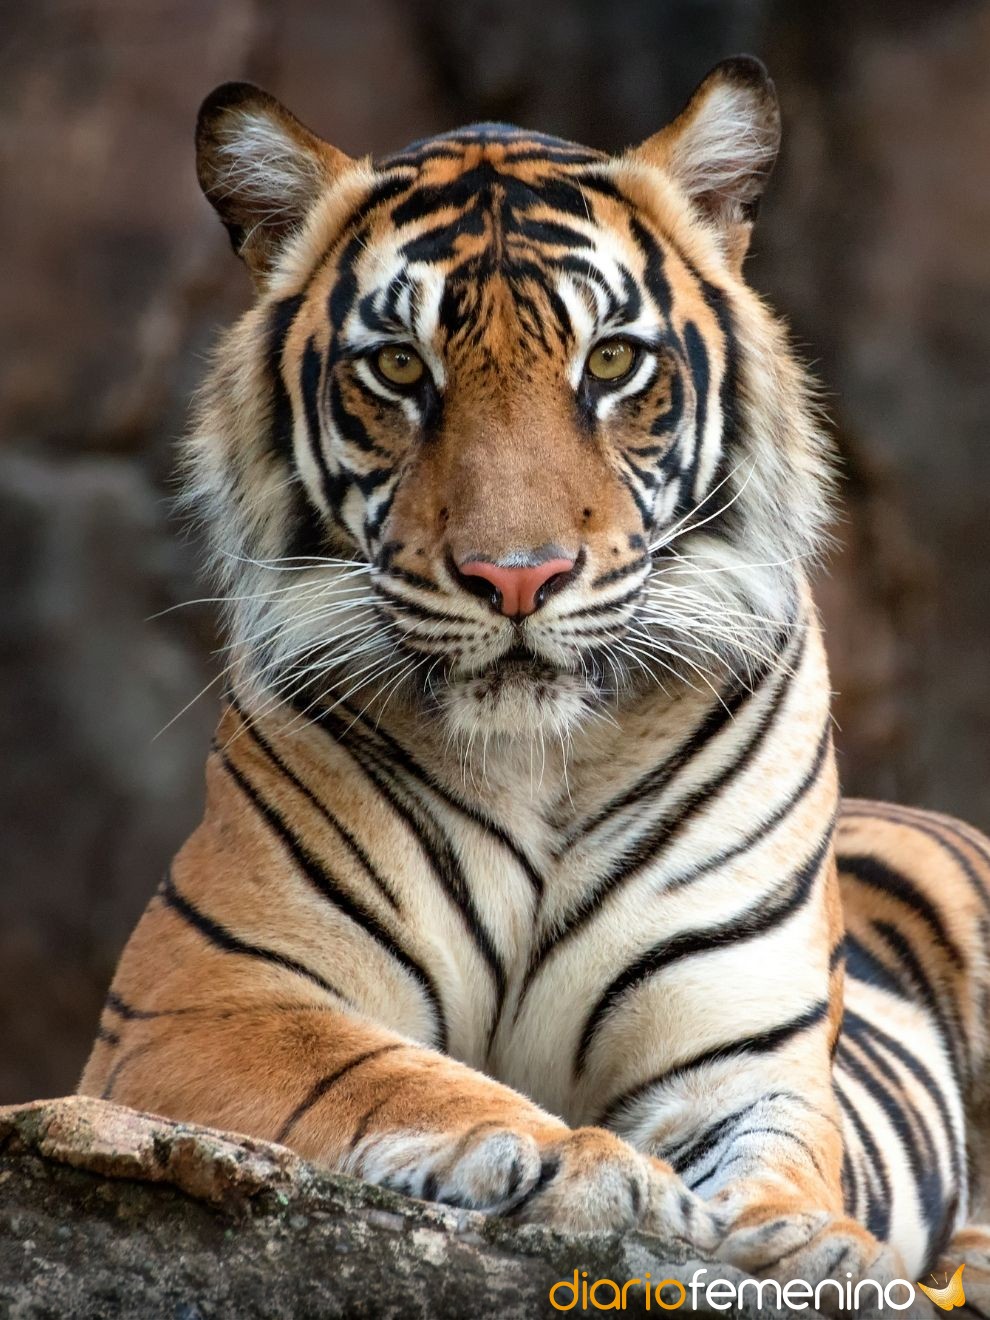 Retoma el control y tu fuerza al soñar con tigres